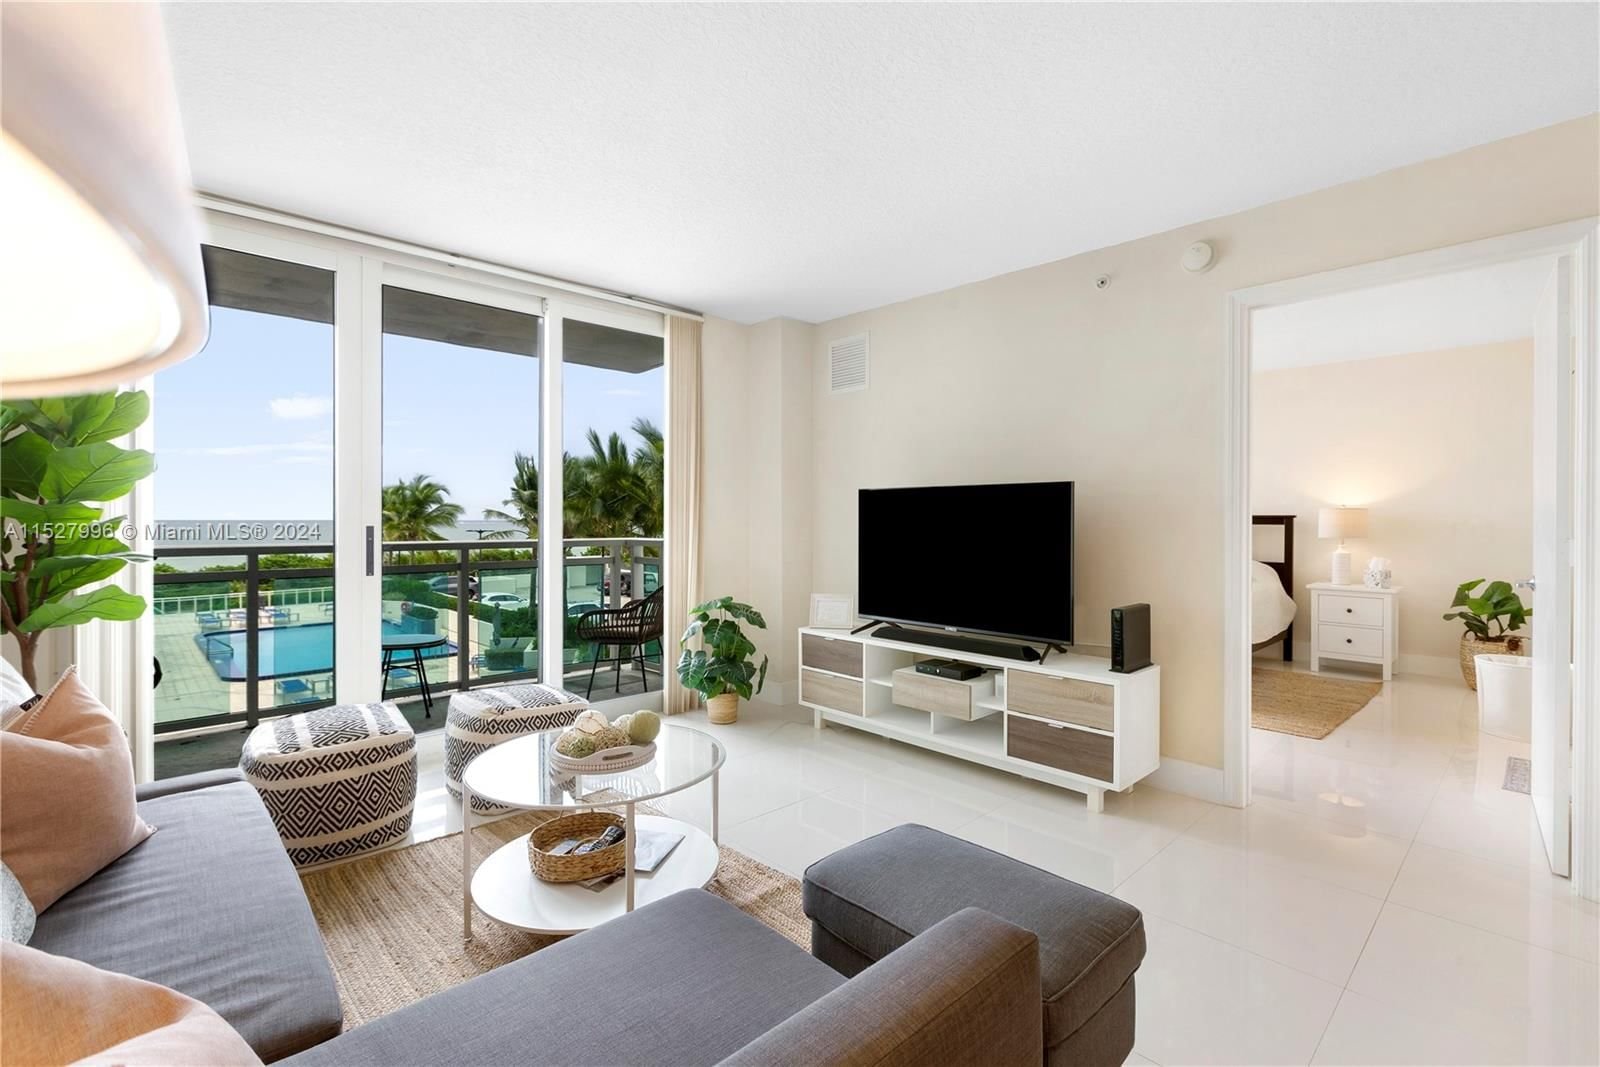 Real estate property located at 6917 Collins Ave #411, Miami-Dade County, THE COLLINS CONDO, Miami Beach, FL